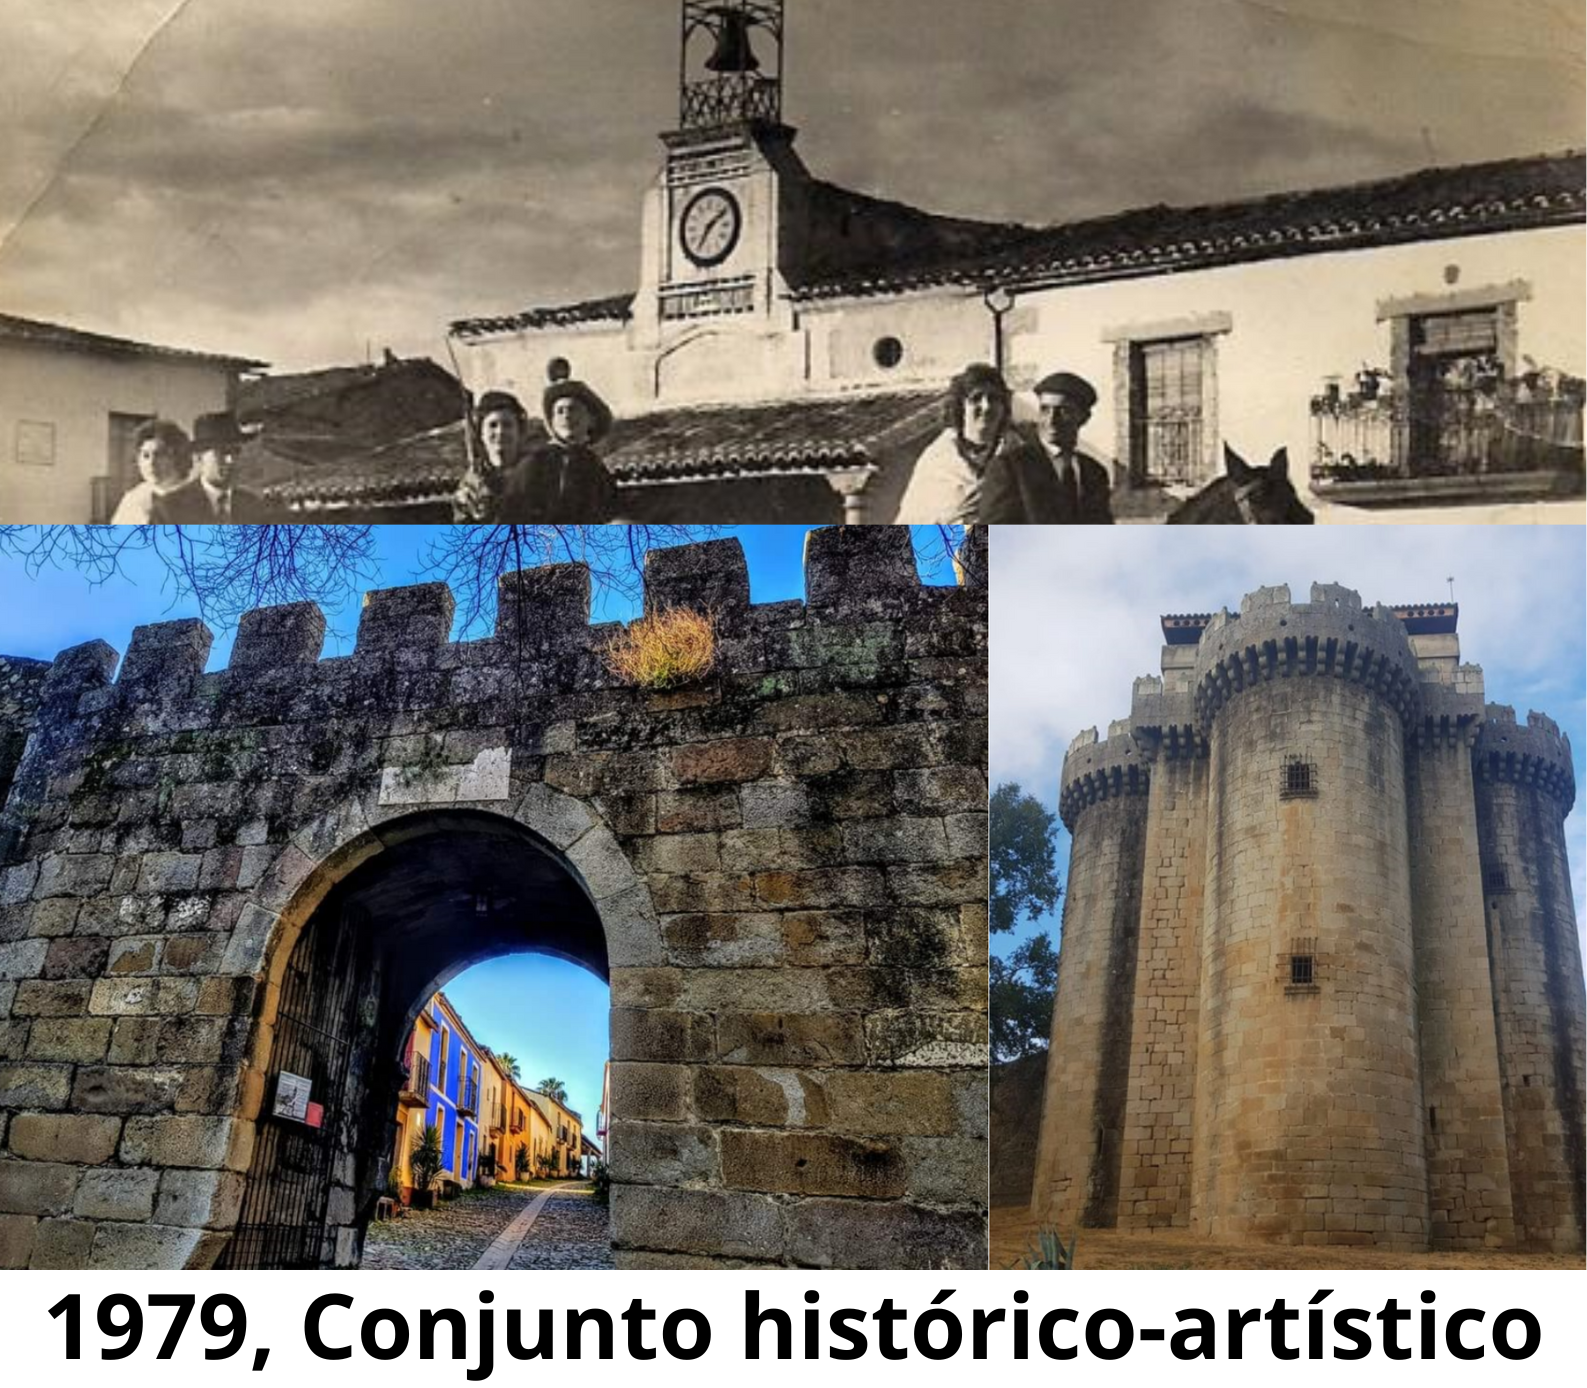 Granadilla: 1979, se declara Conjunto histórico-artístico